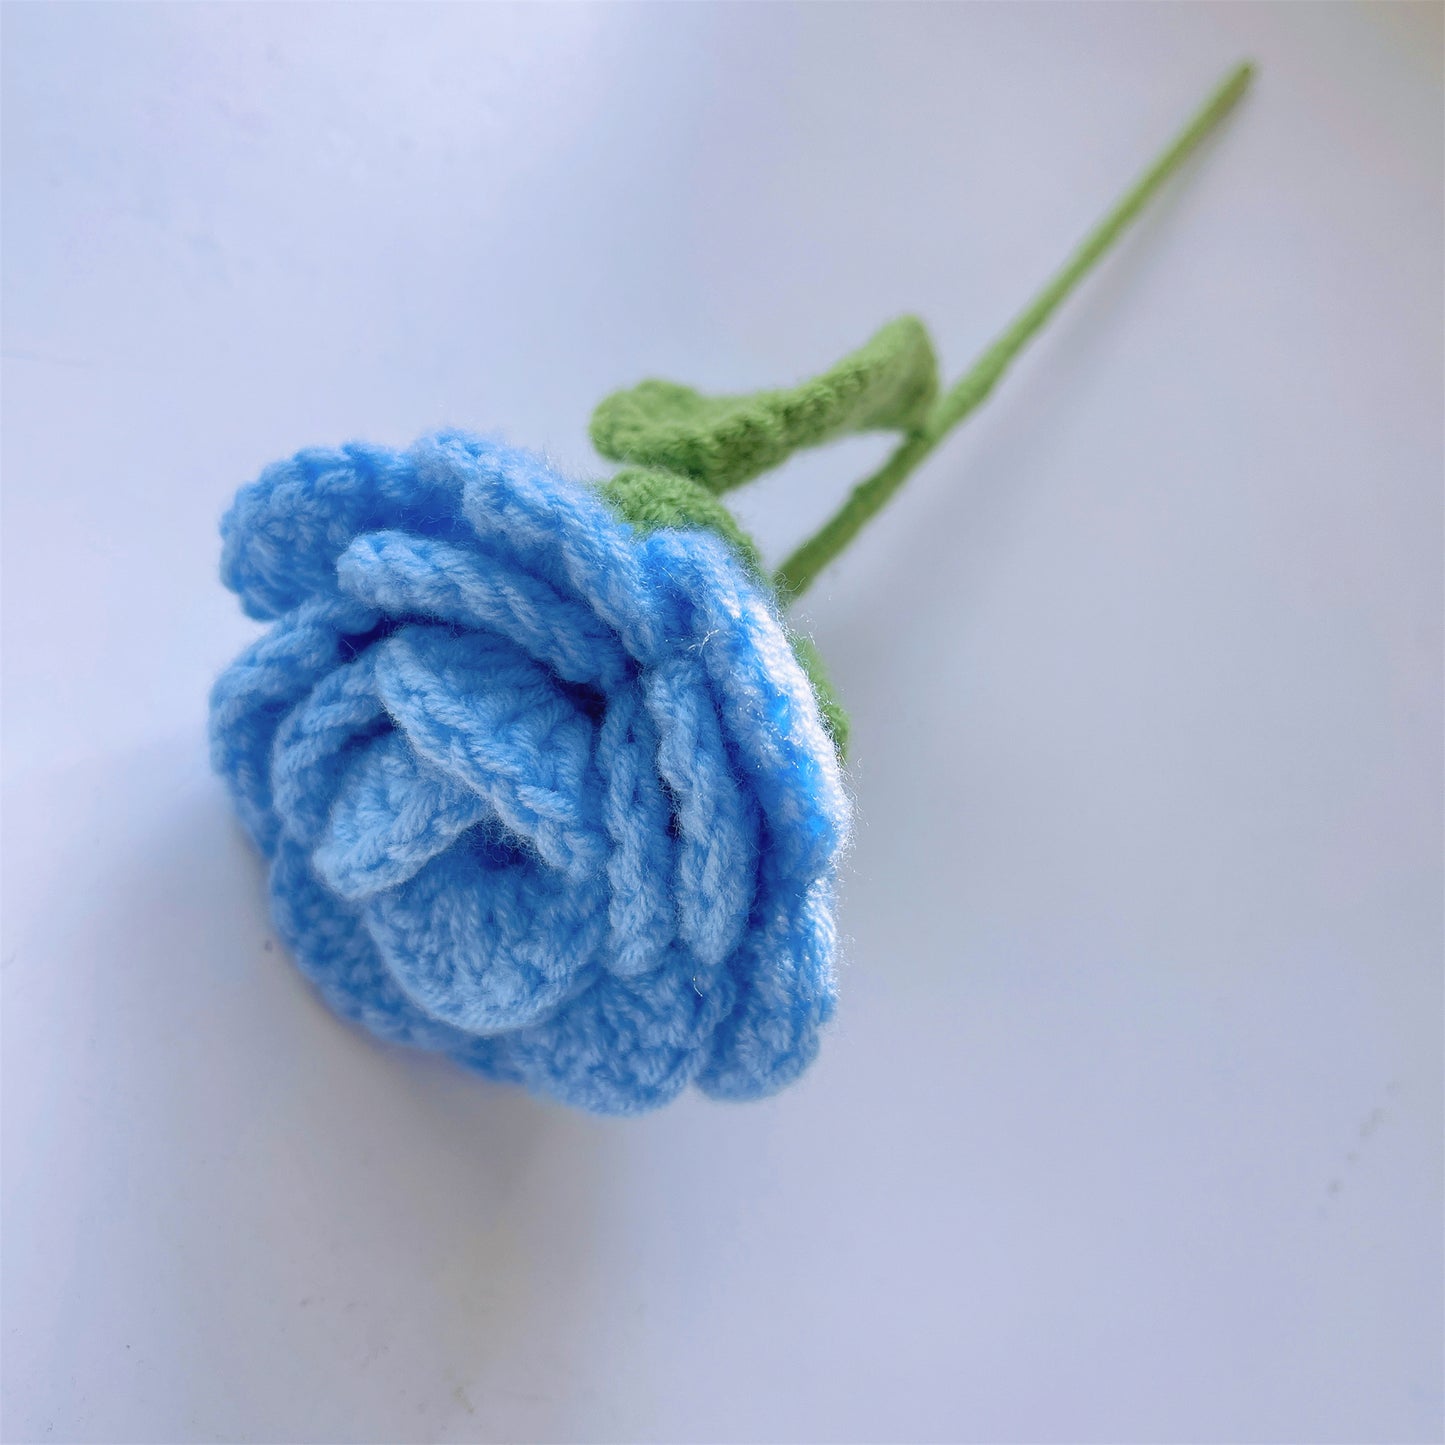 Handgefertigter gehäkelter blauer Blumenstrauß mit Rosen, Lilien, Eukalyptus, Tulpen und Vergissmeinnicht